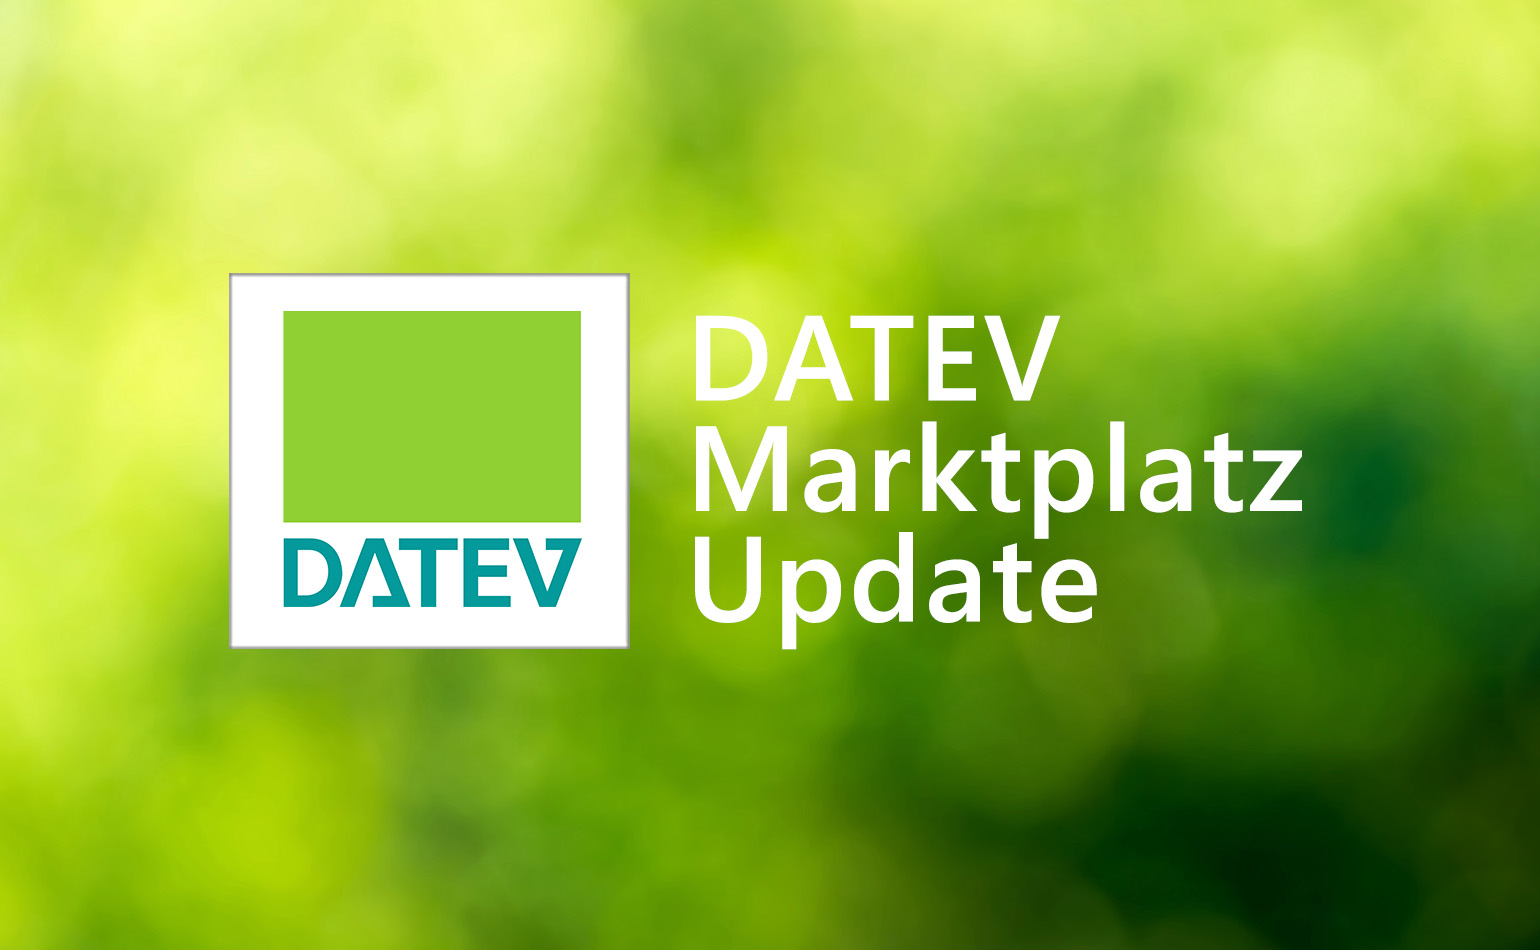 grüner Hintergrund mit DATEV Logo und DATEV Marktplatz Update Schrift